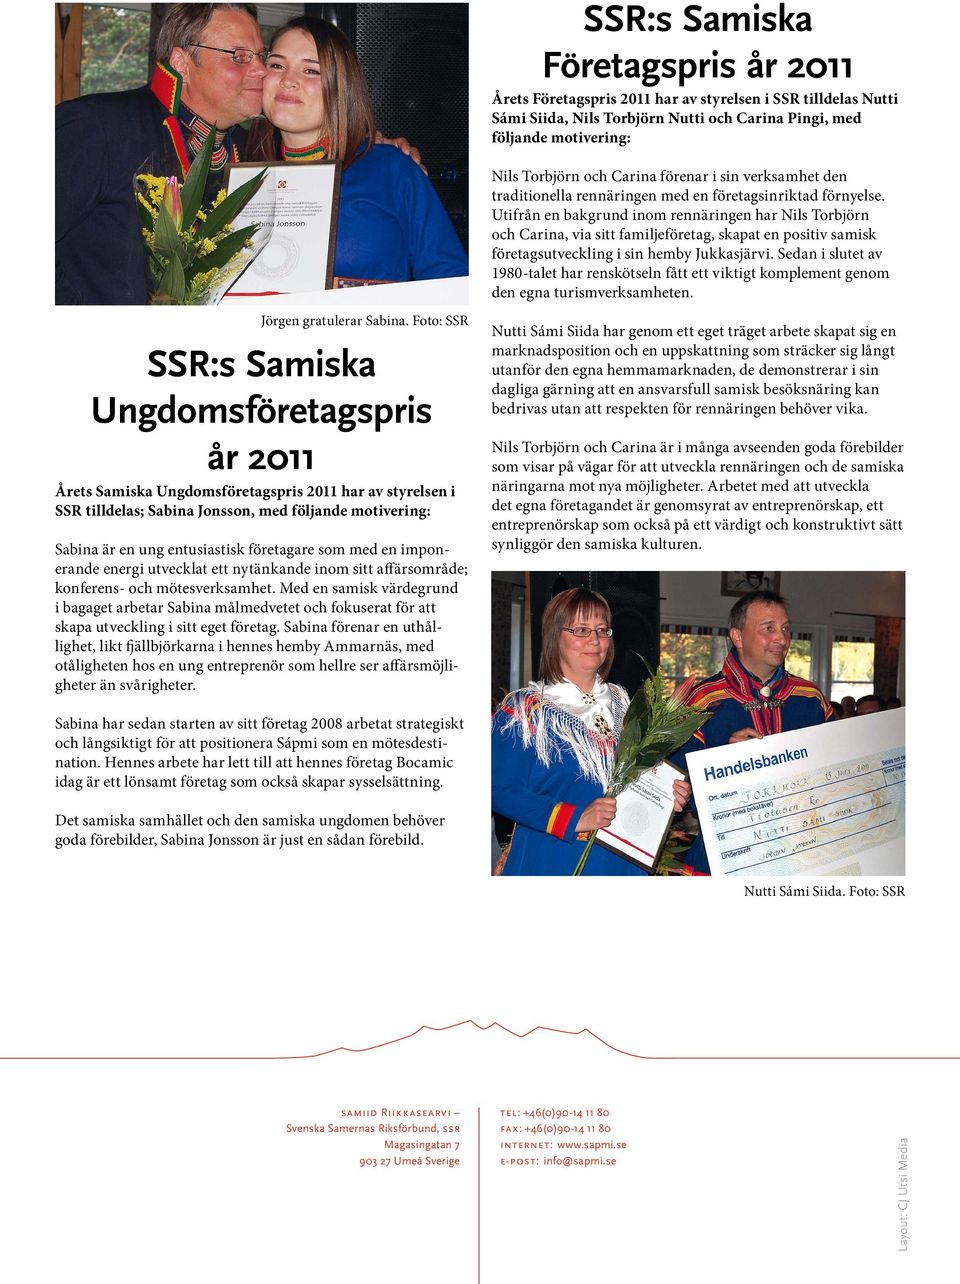 Utifrån en bakgrund inom rennäringen har Nils Torbjörn och Carina, via sitt familjeföretag, skapat en positiv samisk företagsutveckling i sin hemby Jukkasjärvi.